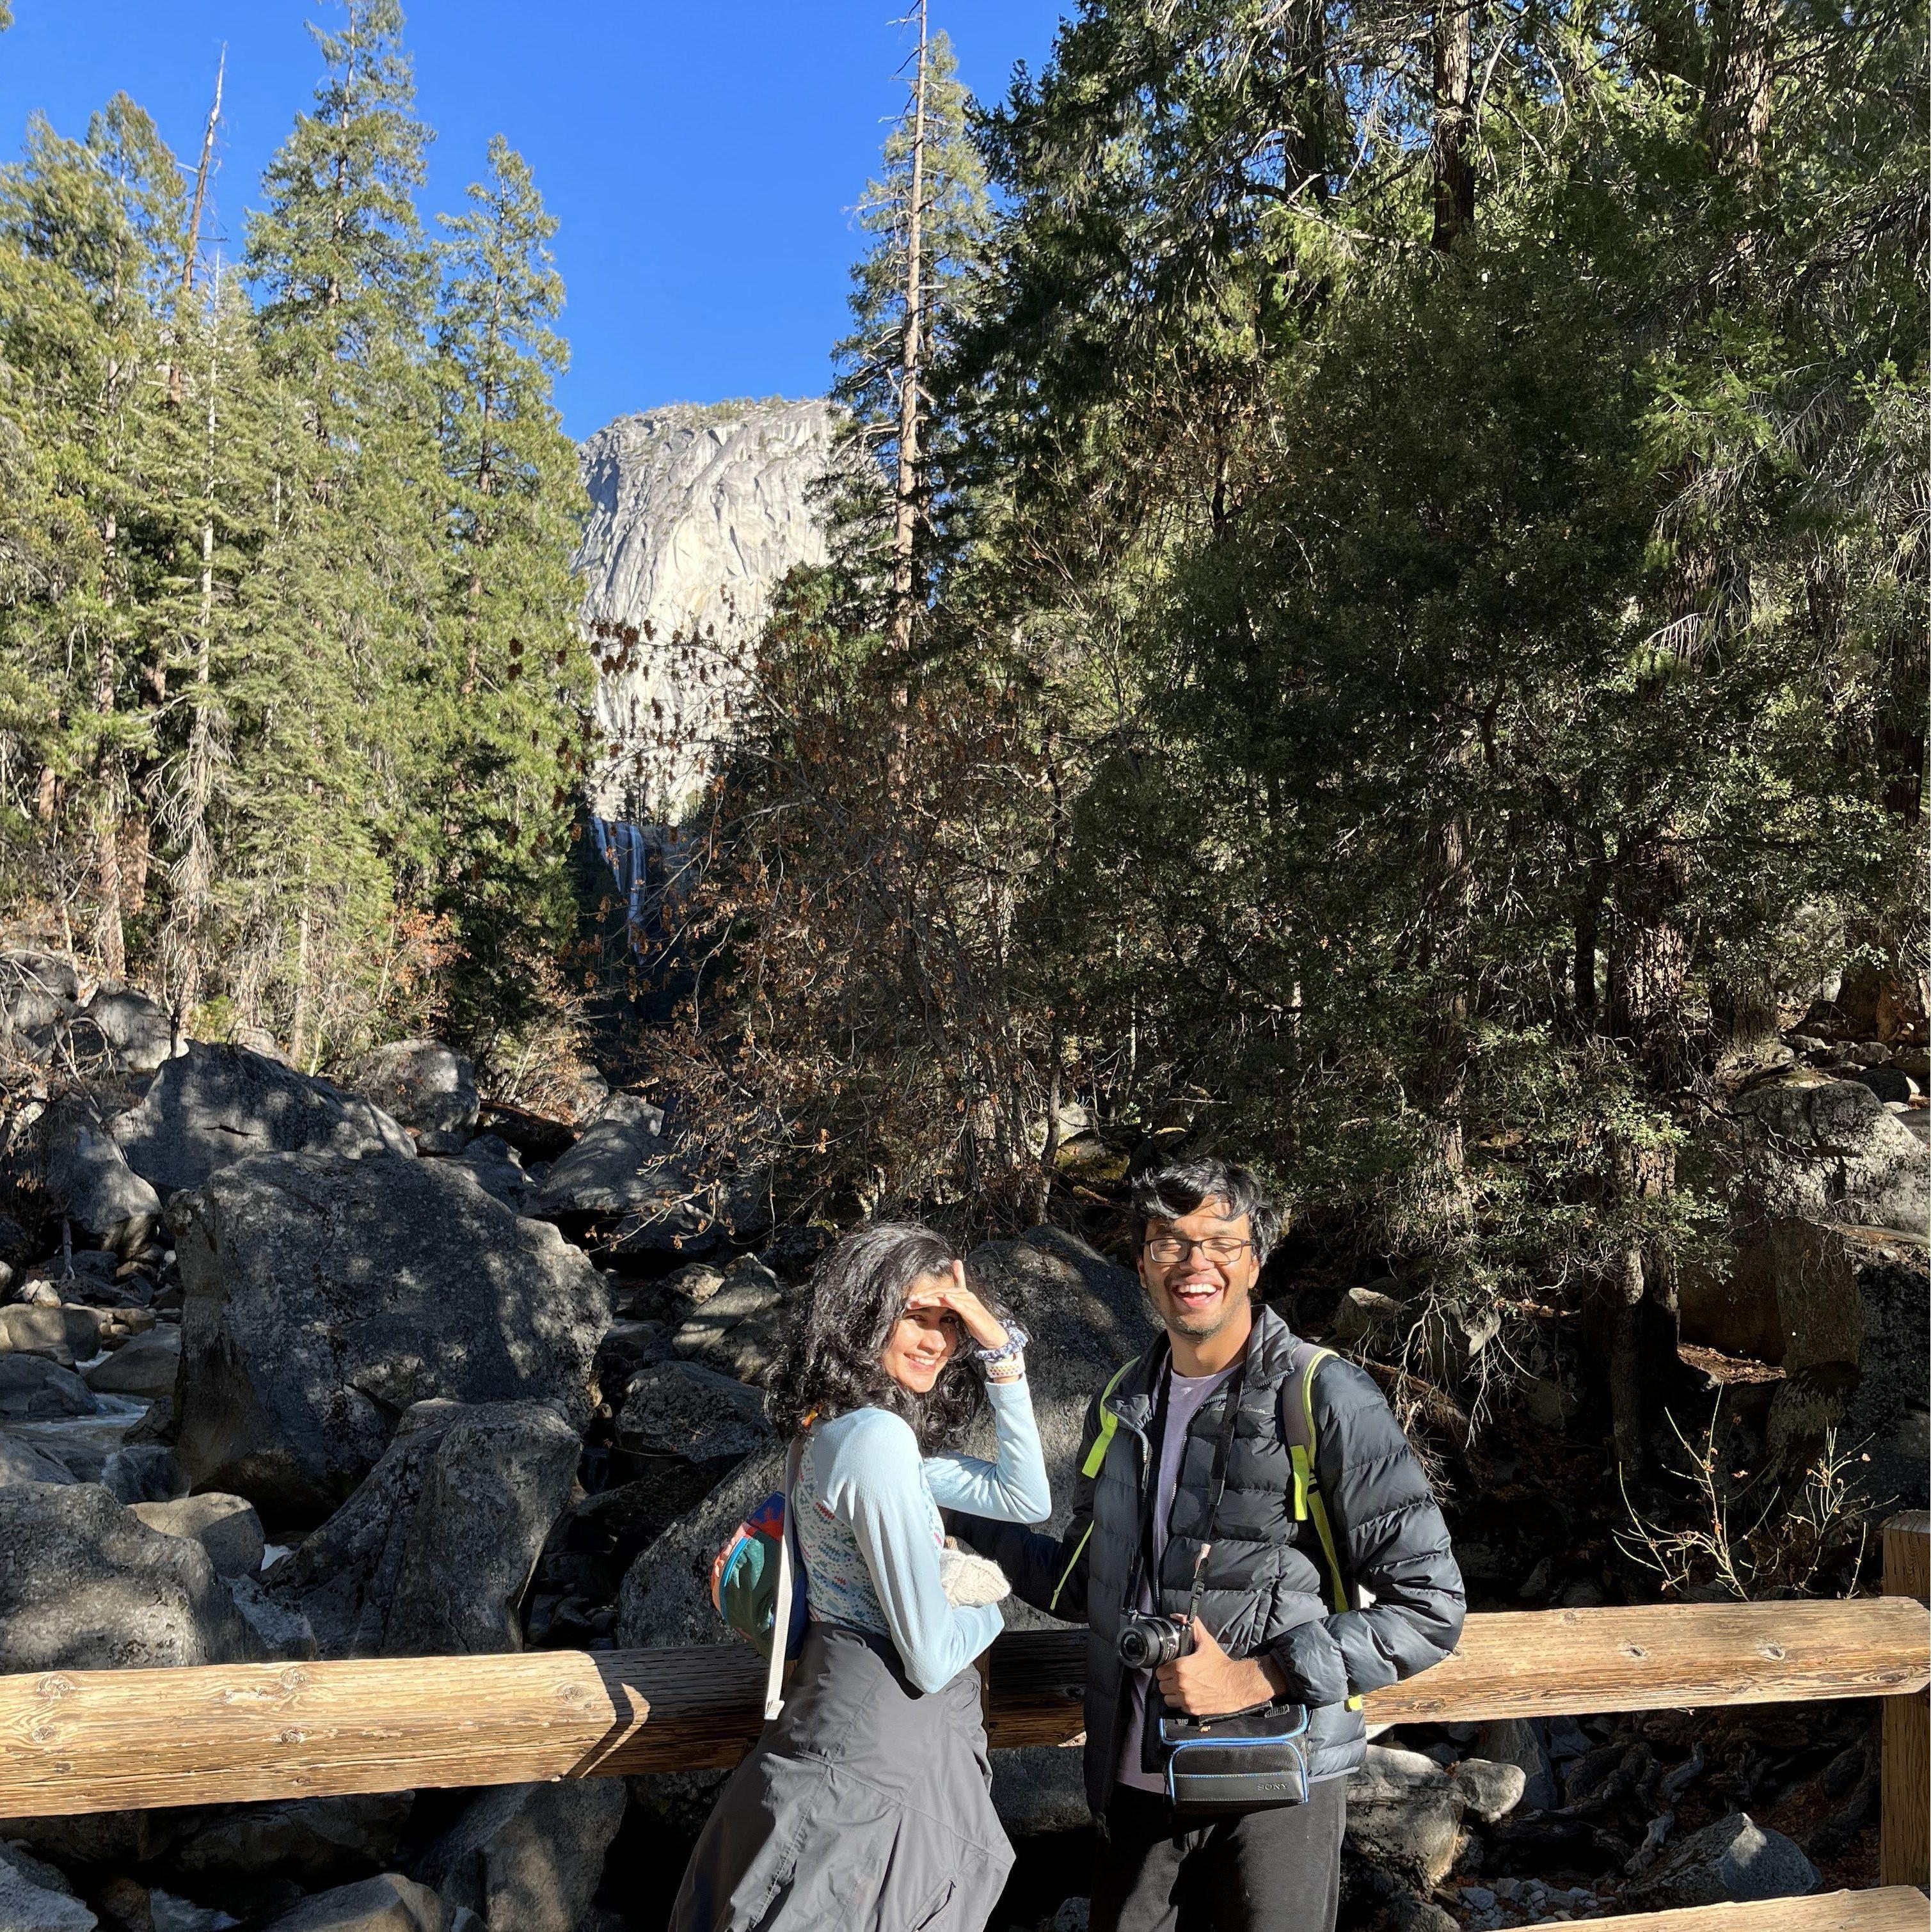 Raghav and I doing what we like the most! Hiking in Yosemite :)